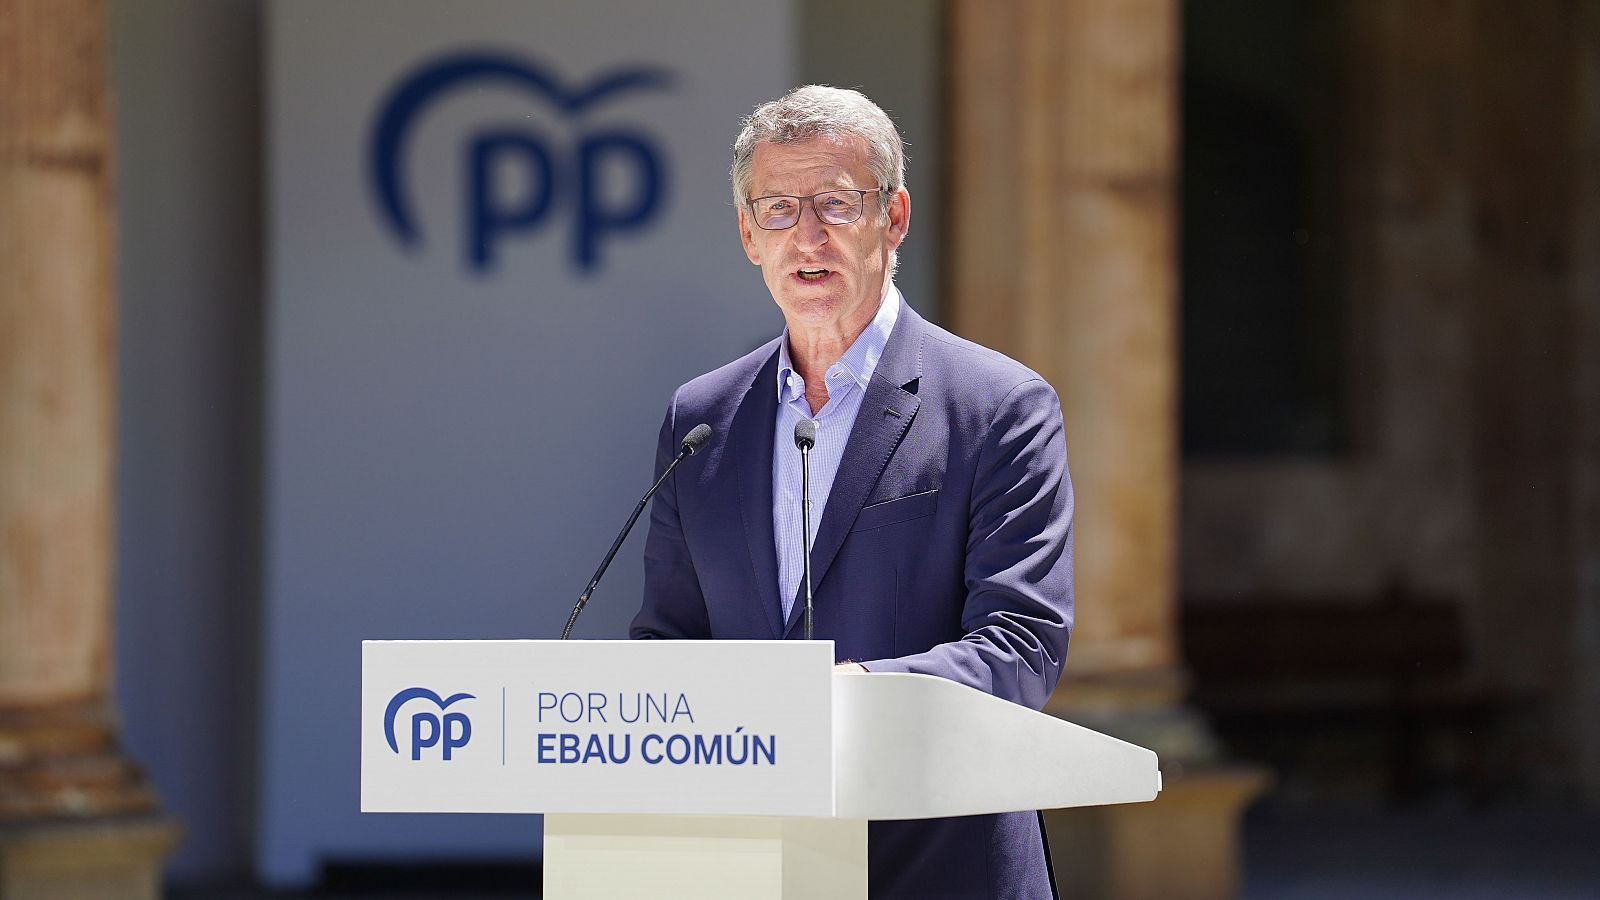 Cruce de reproches entre PP y PSOE por "la imparcialidad" del TC